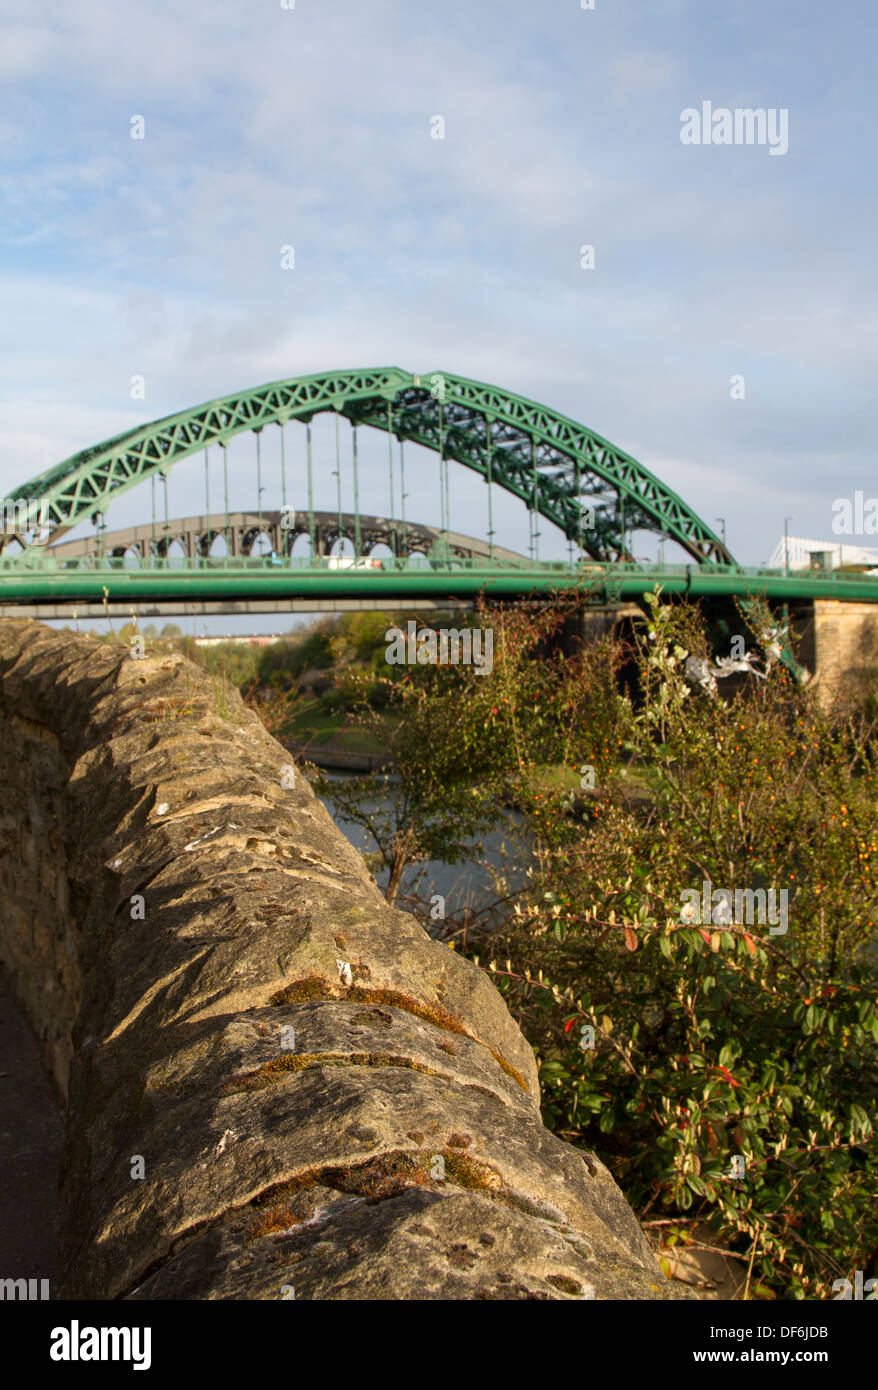 Wearmouth ponte che attraversa il fiume indossare a Sunderland con il ponte della ferrovia dietro di esso, a nord-est dell' Inghilterra Foto Stock